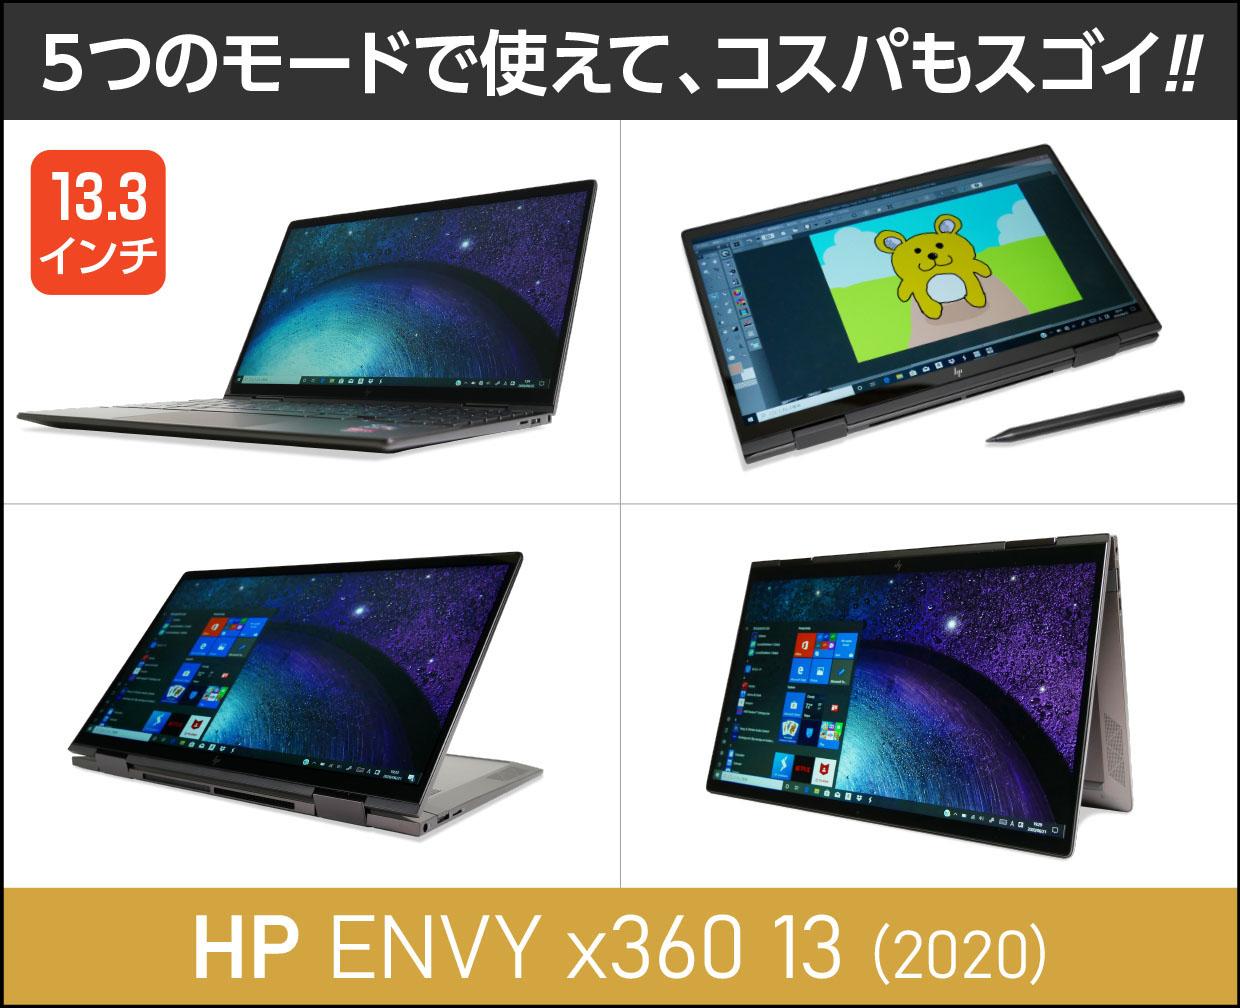 HP ENVY x360 13【2020年モデル】実機レビュー！30秒でわかる注意点とポイント掲載。幅広く使えてコスパも凄い！ | これがおすすめ ノートパソコン